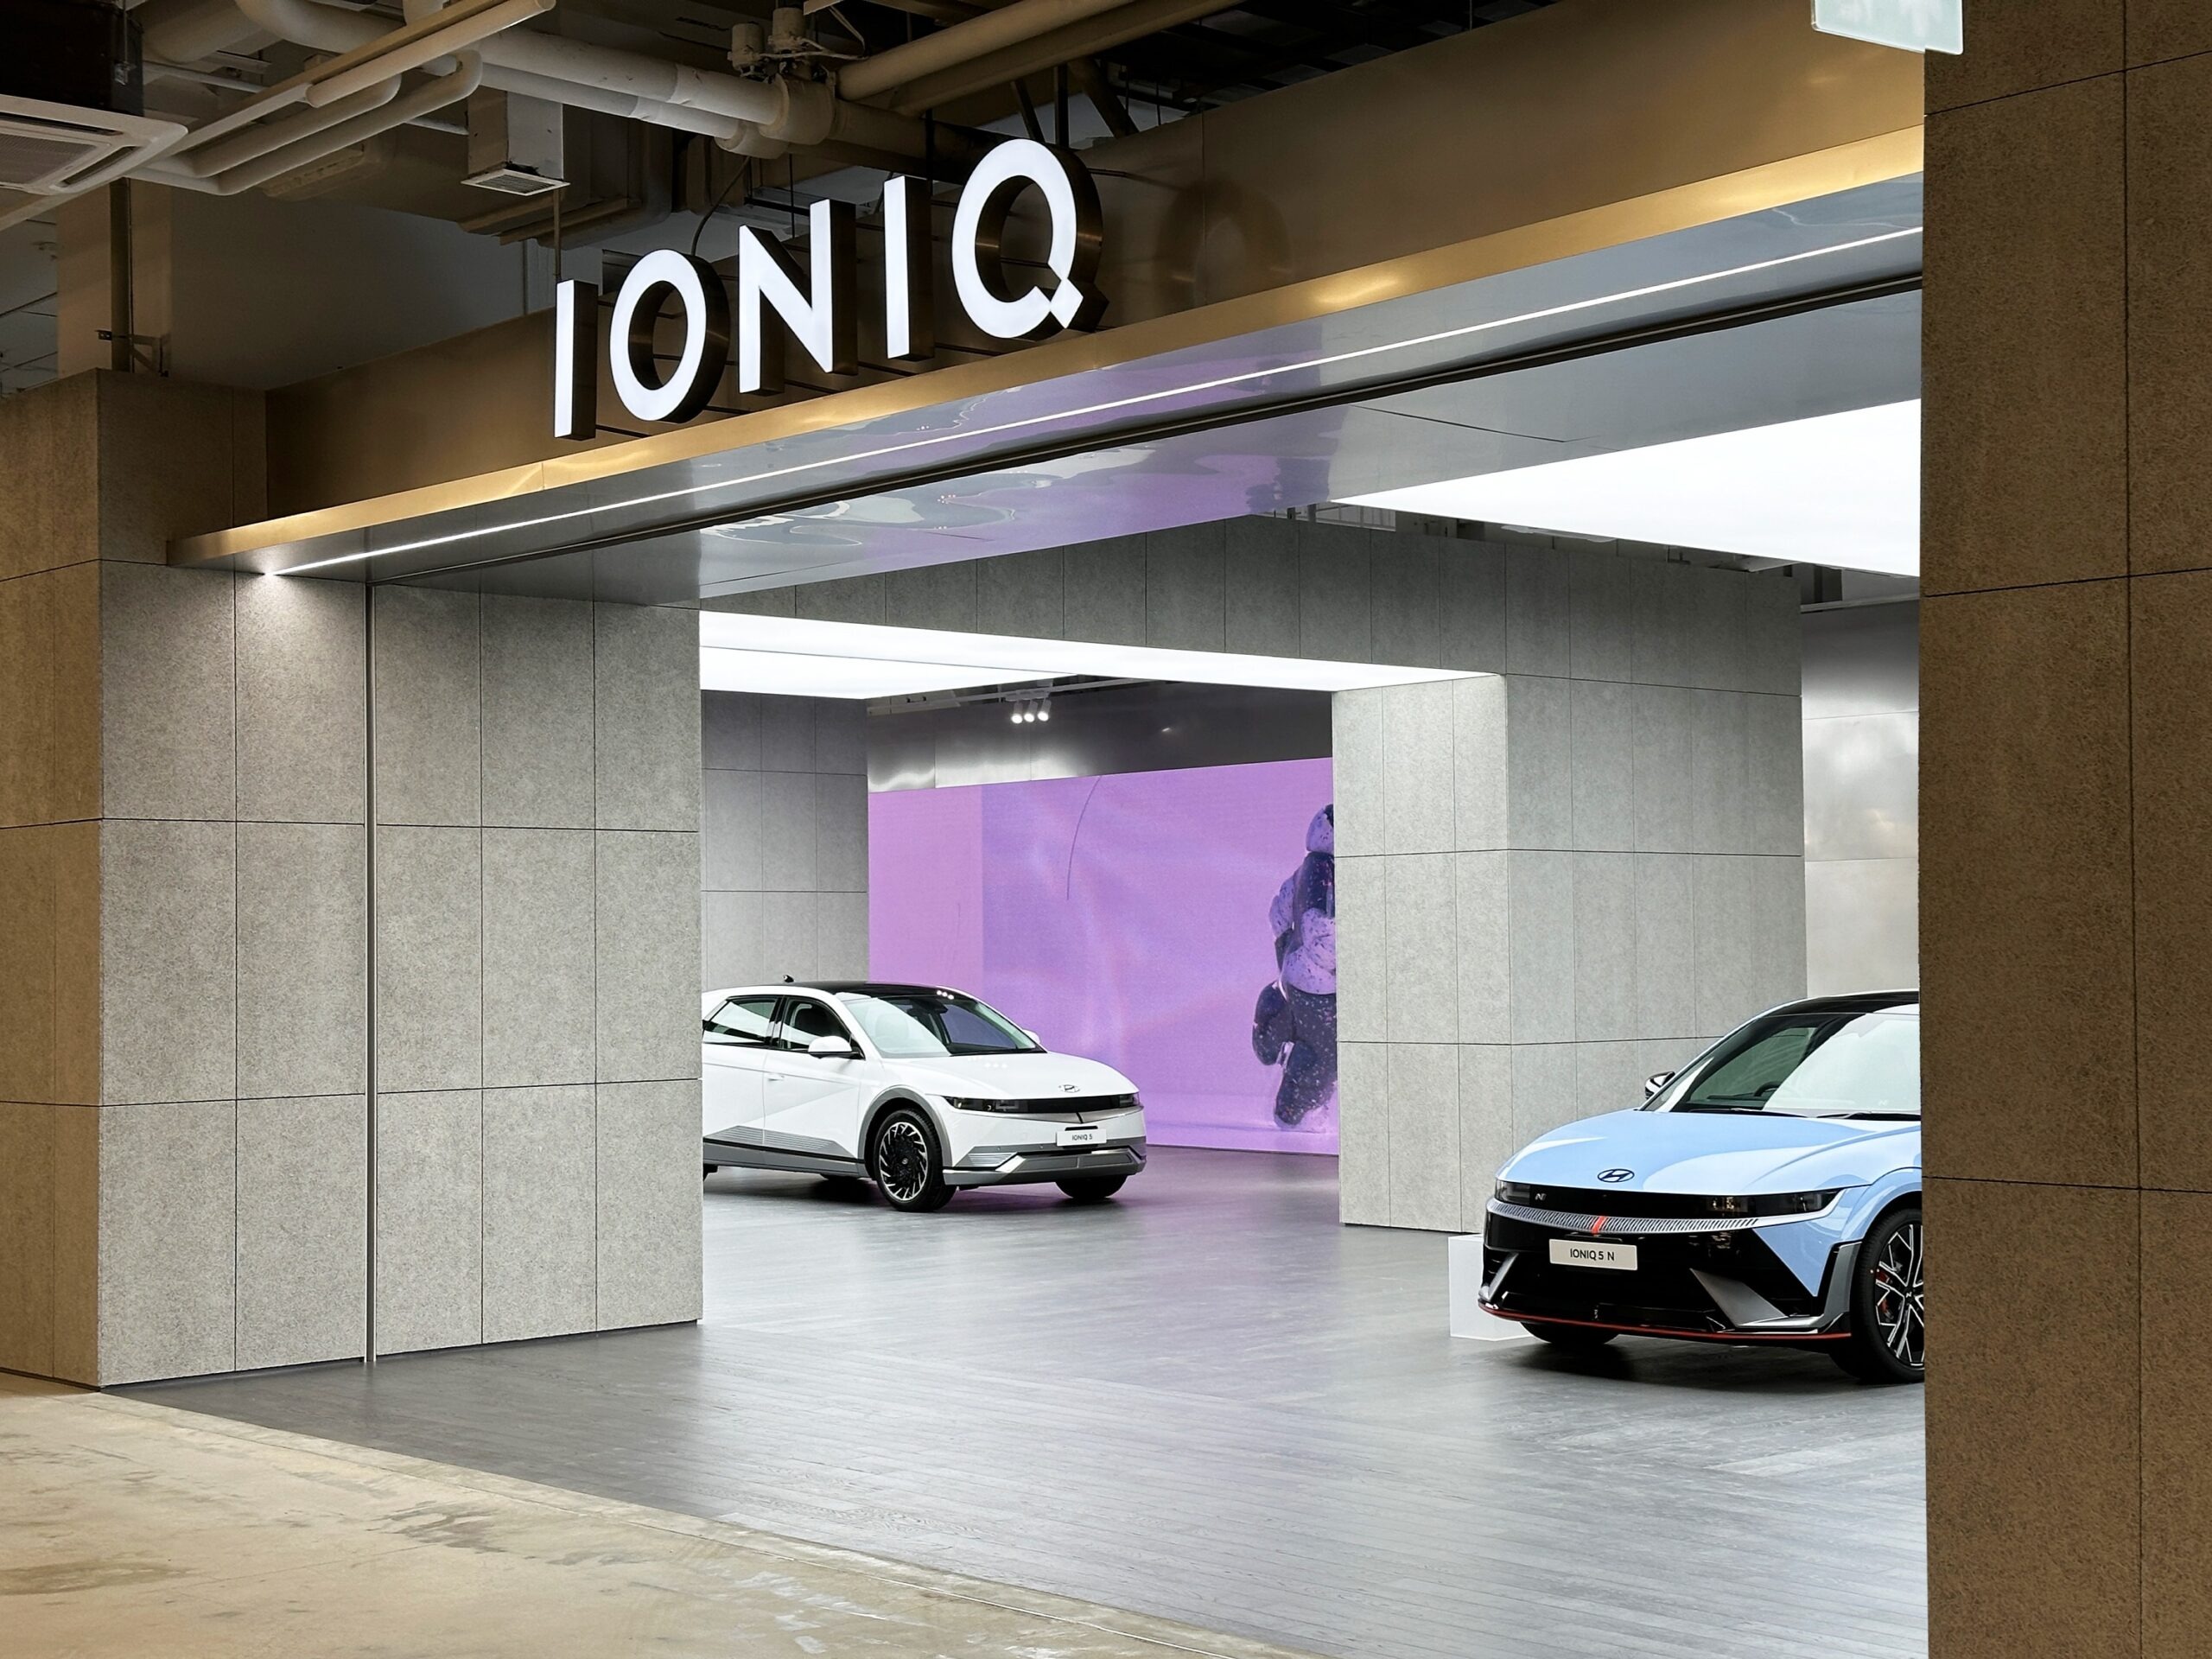 Hyundai IONIQ Lab